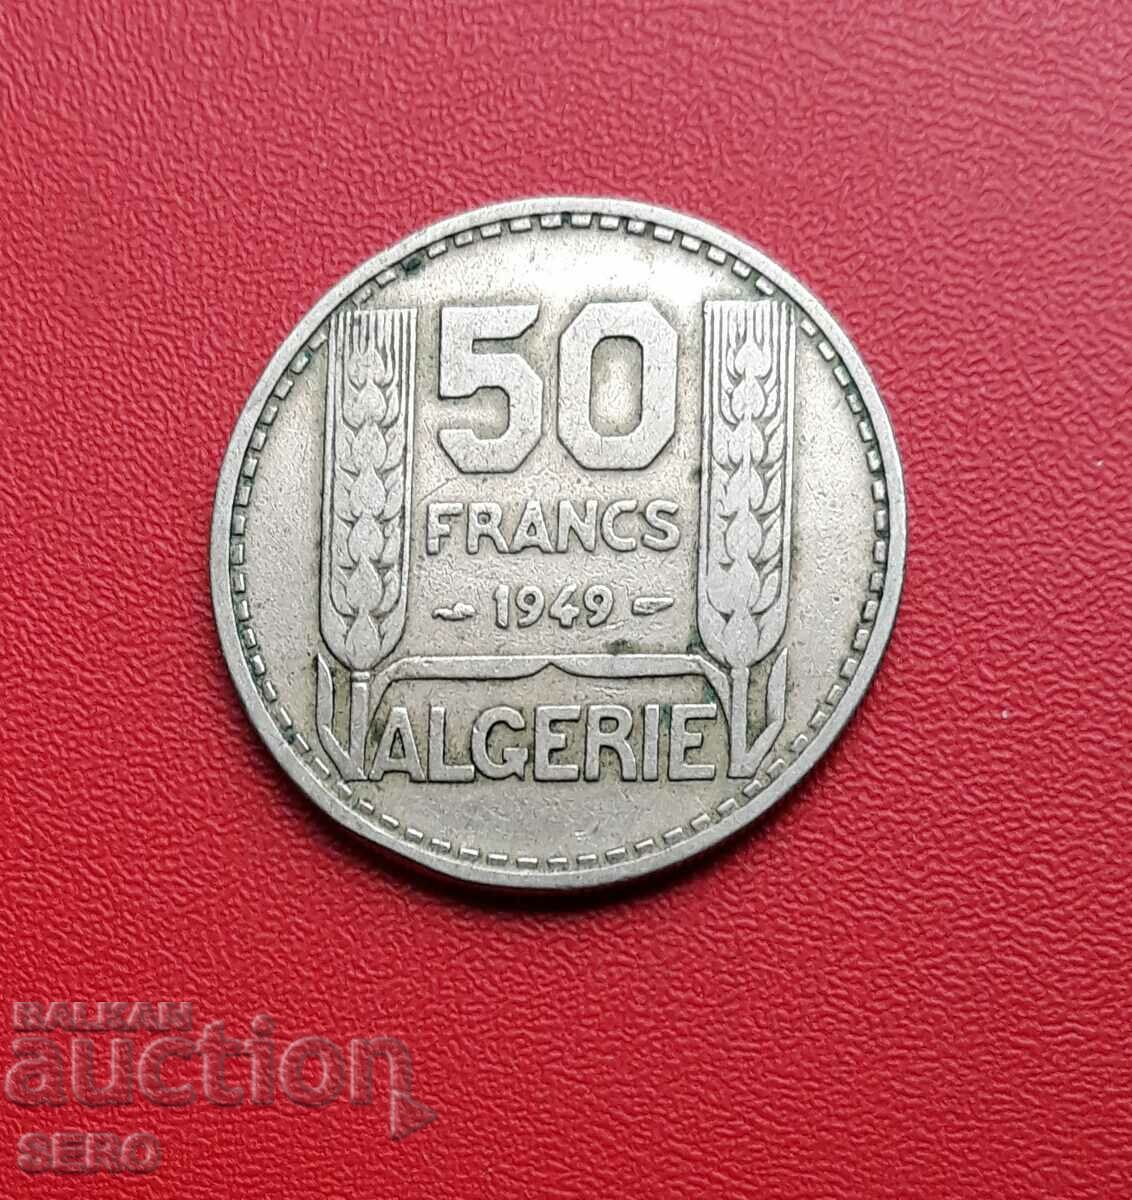 Algeria-50 francs 1949